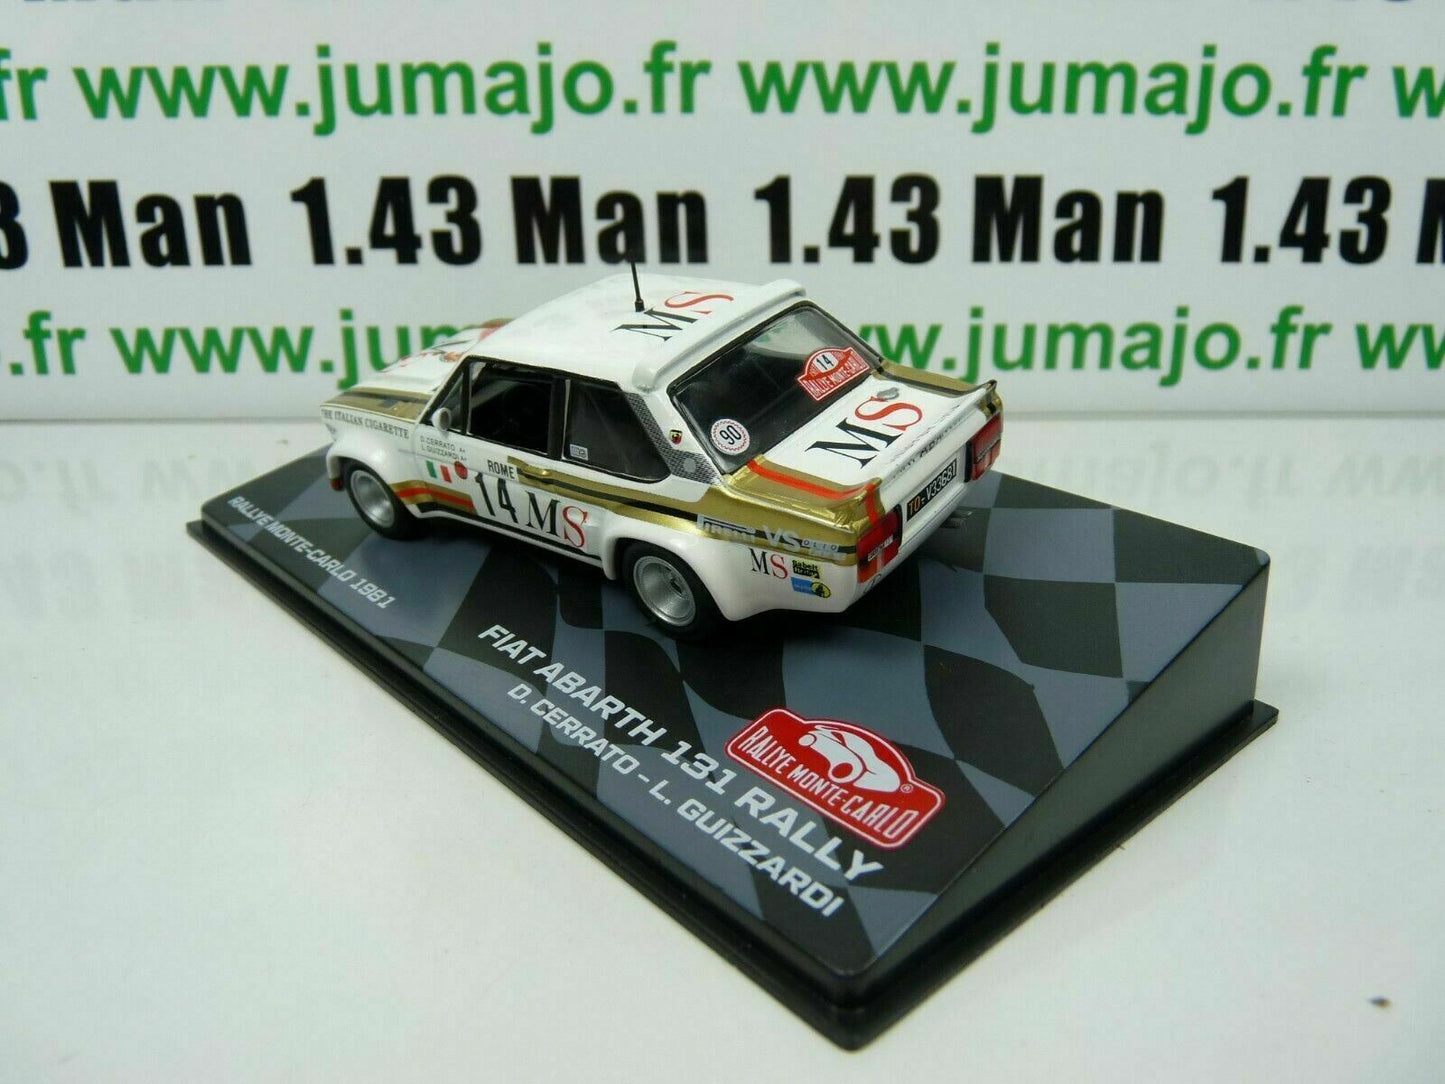 RMIT22 1/43 IXO Rallye Monte Carlo : FIAT Abarth 131 rally 1981 Cerrato #14